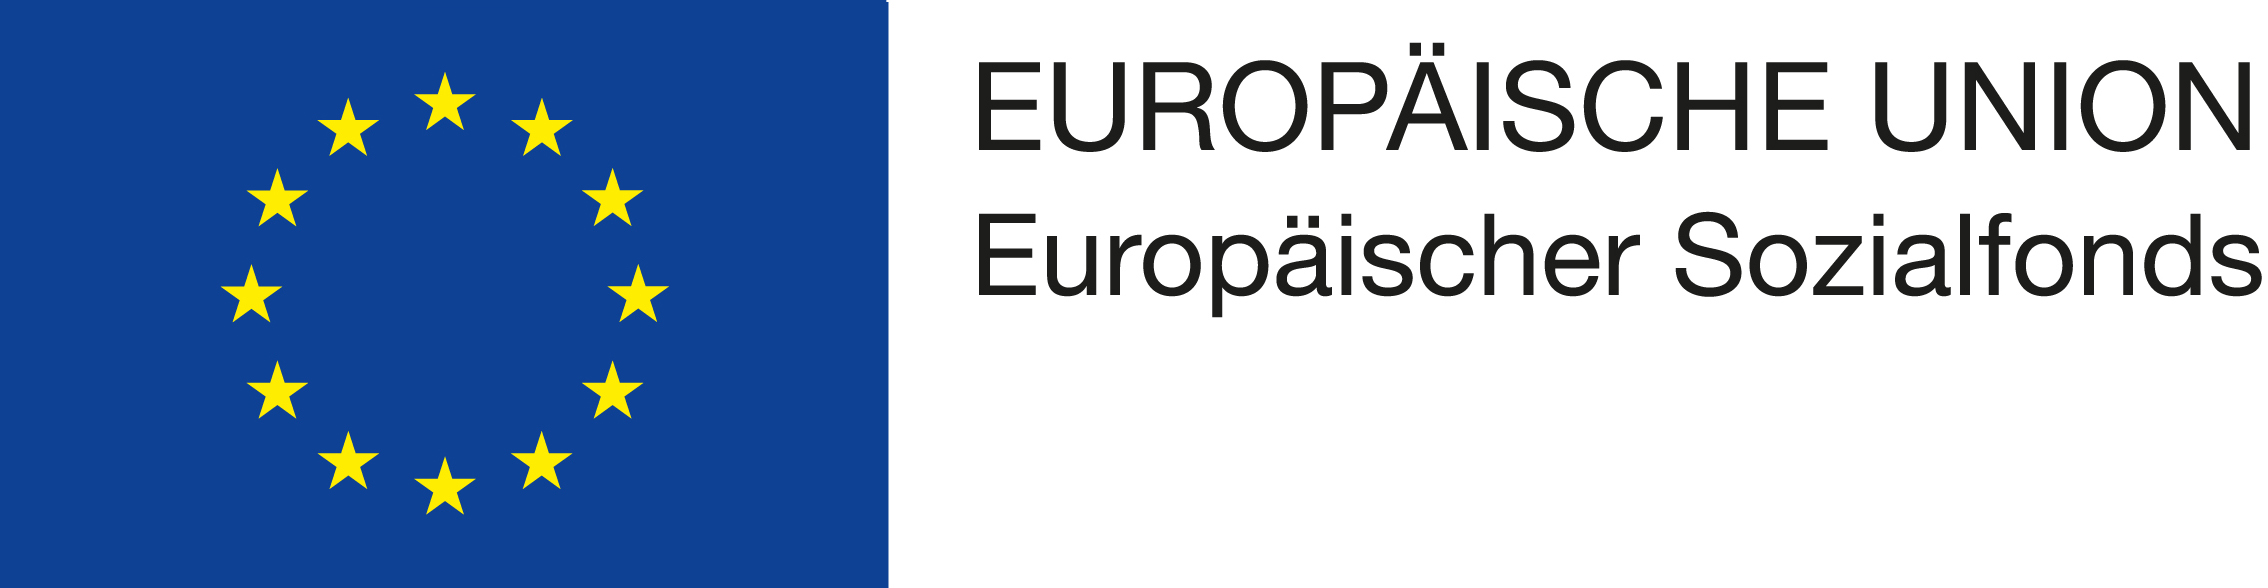 EU Logomit EU und ESF Schriftzg rechts oben neben der Fahne